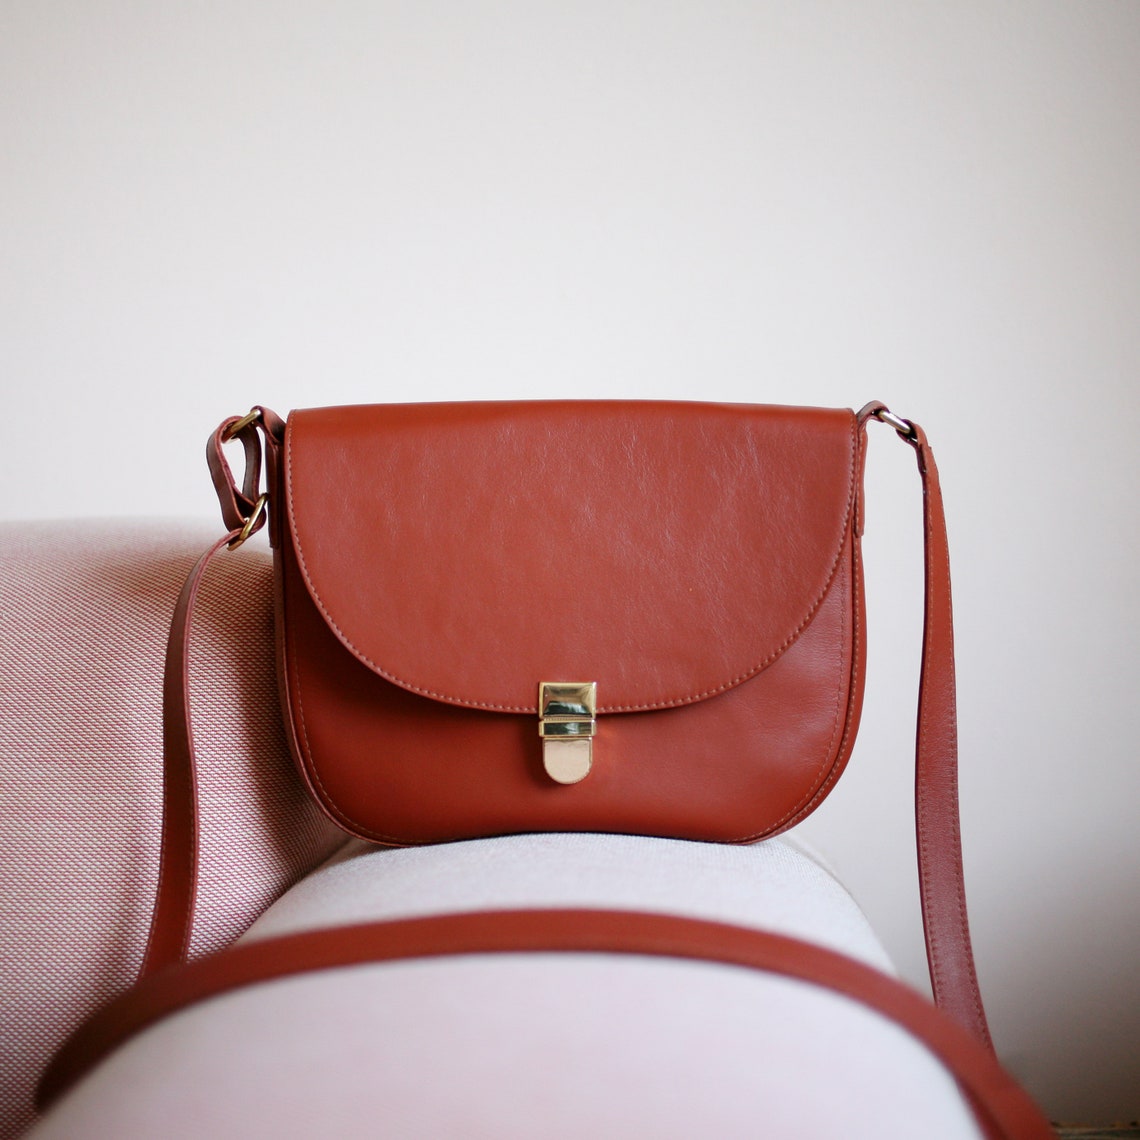 Saddle Bag Bordeaux Leather crossbody bag minimalistic | Etsy